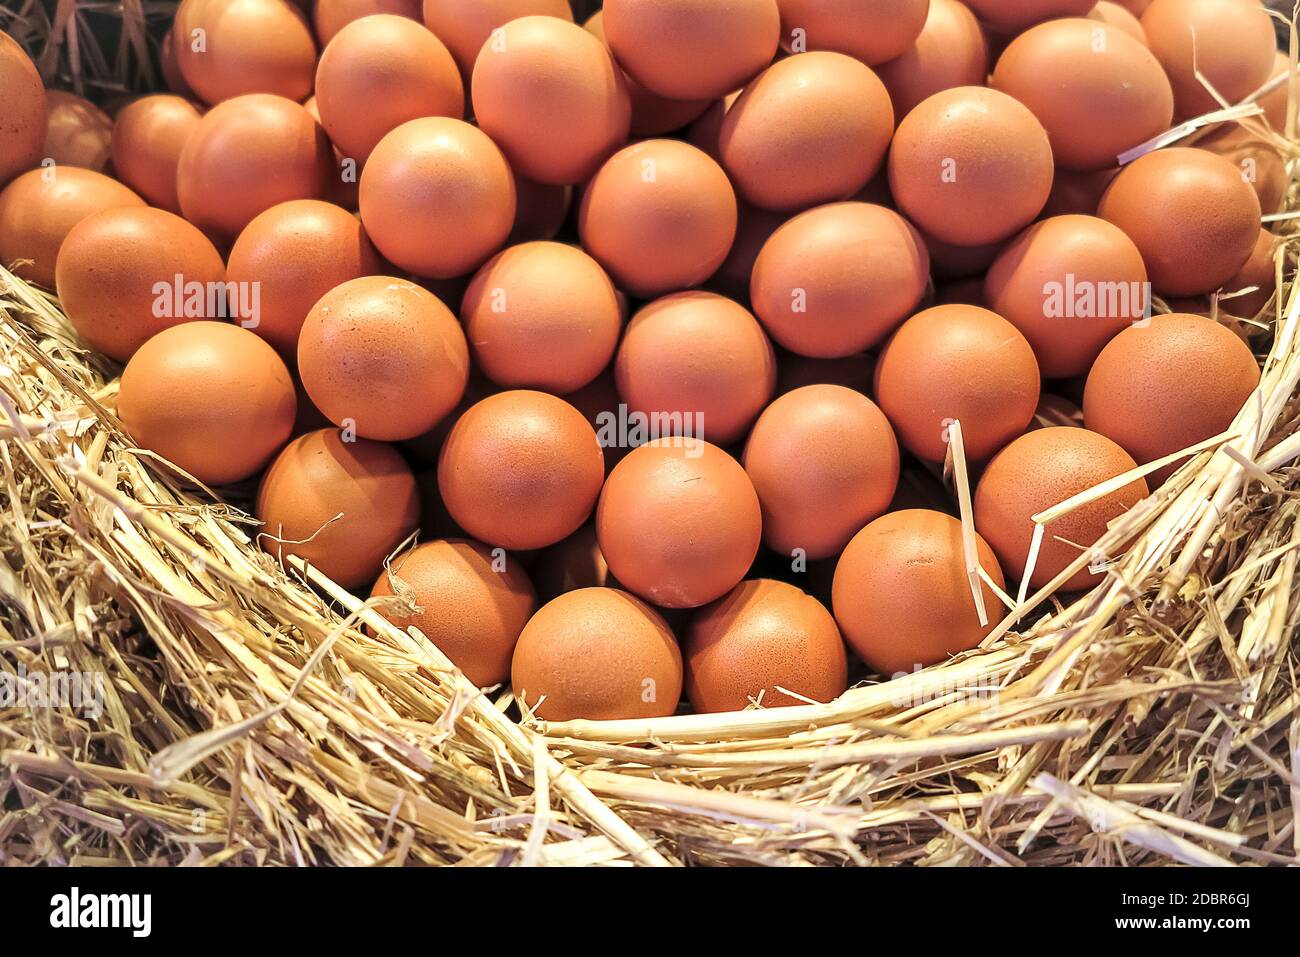 Wonderful arrangement of fresh brown chicken eggs in basket Stock Photo